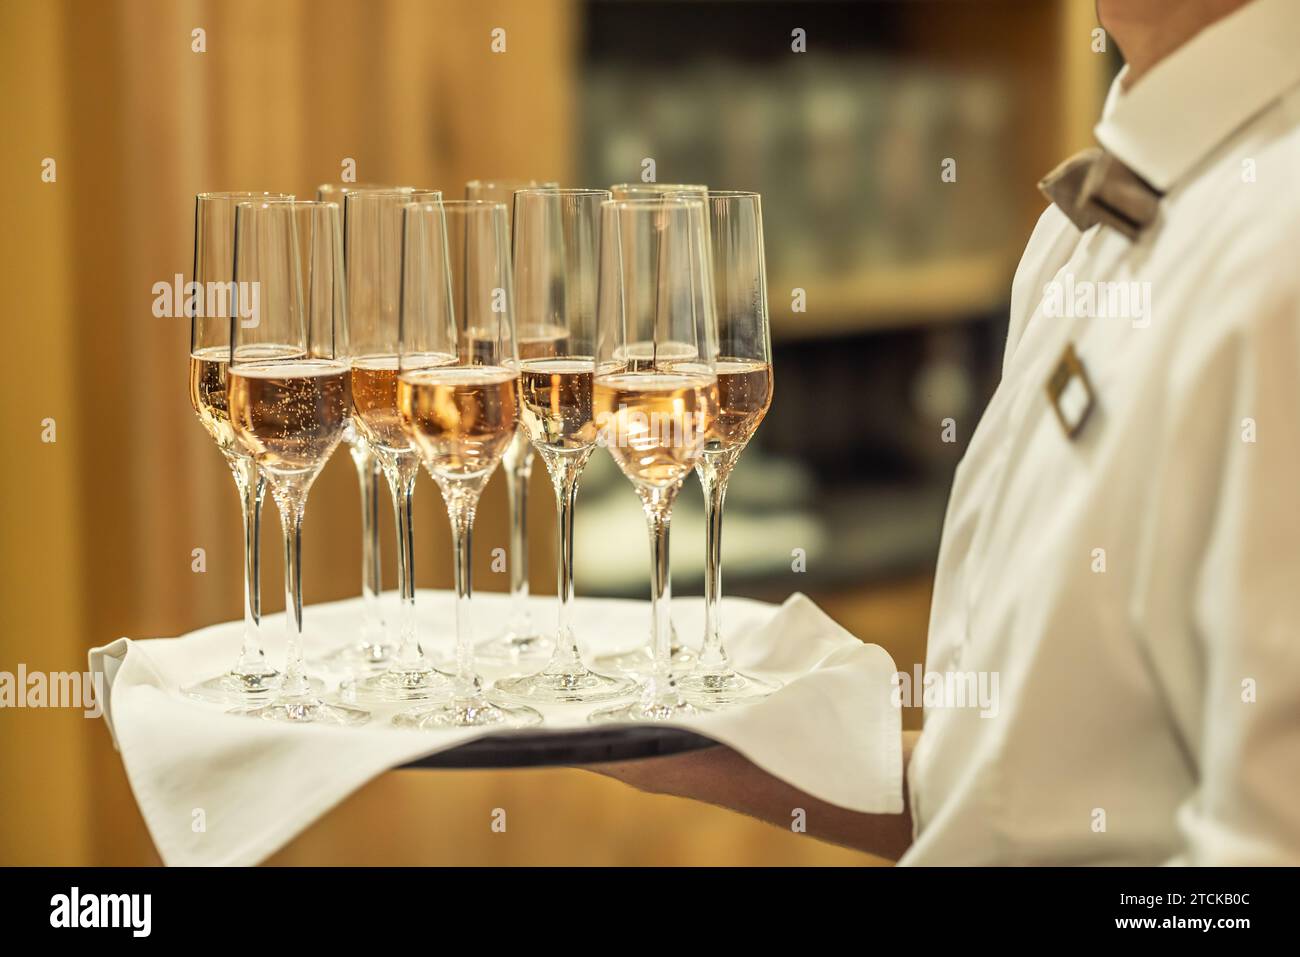 Un jeune serveur tient une assiette avec du champagne ou du prosecco comme boisson de bienvenue lors d'un événement à l'hôtel. Banque D'Images